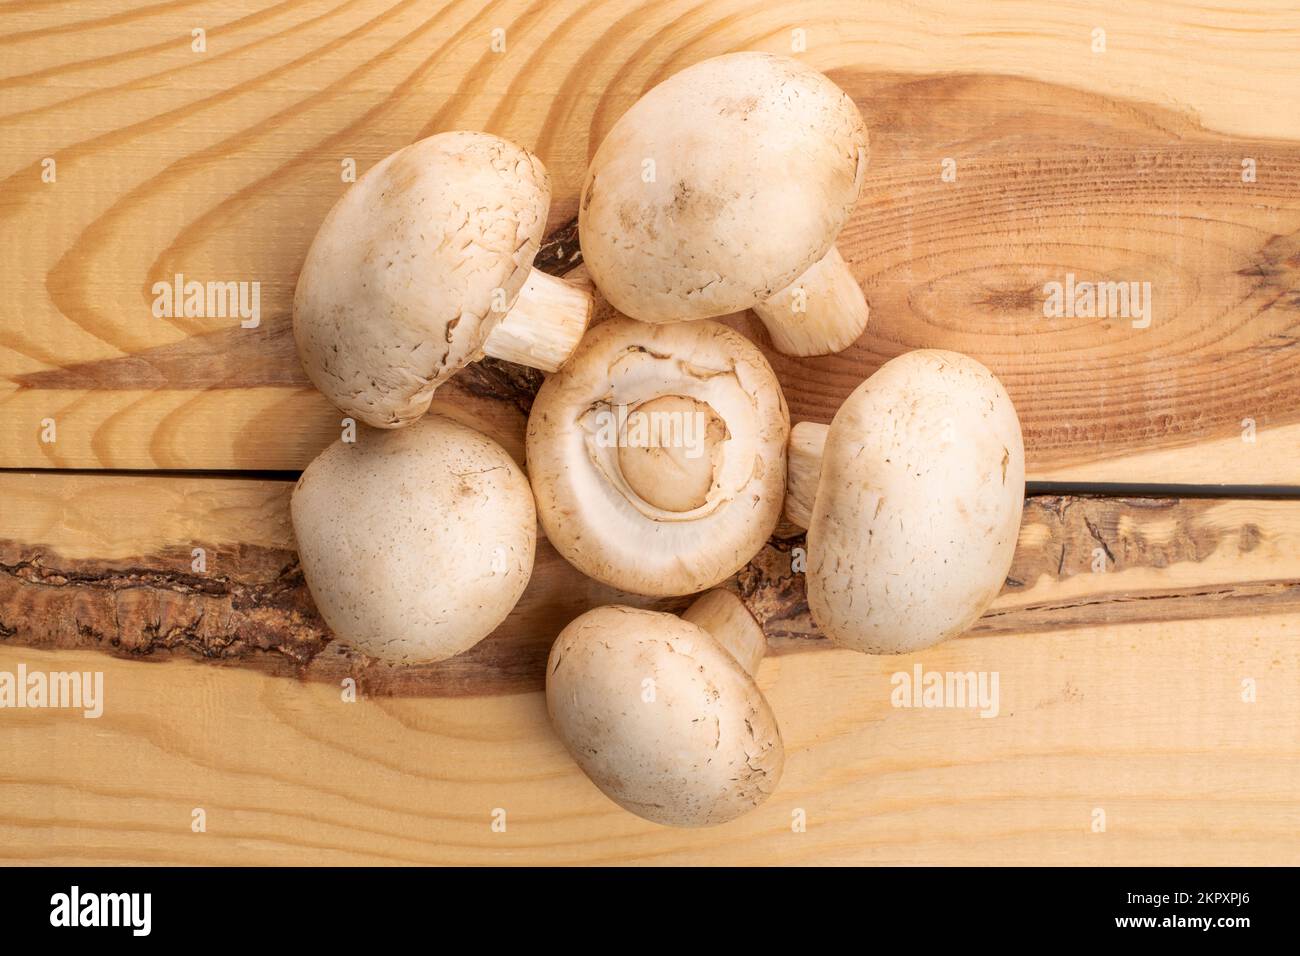 Diversi funghi champignon freschi e freschi, su un tavolo in legno naturale, vista dall'alto. Foto Stock